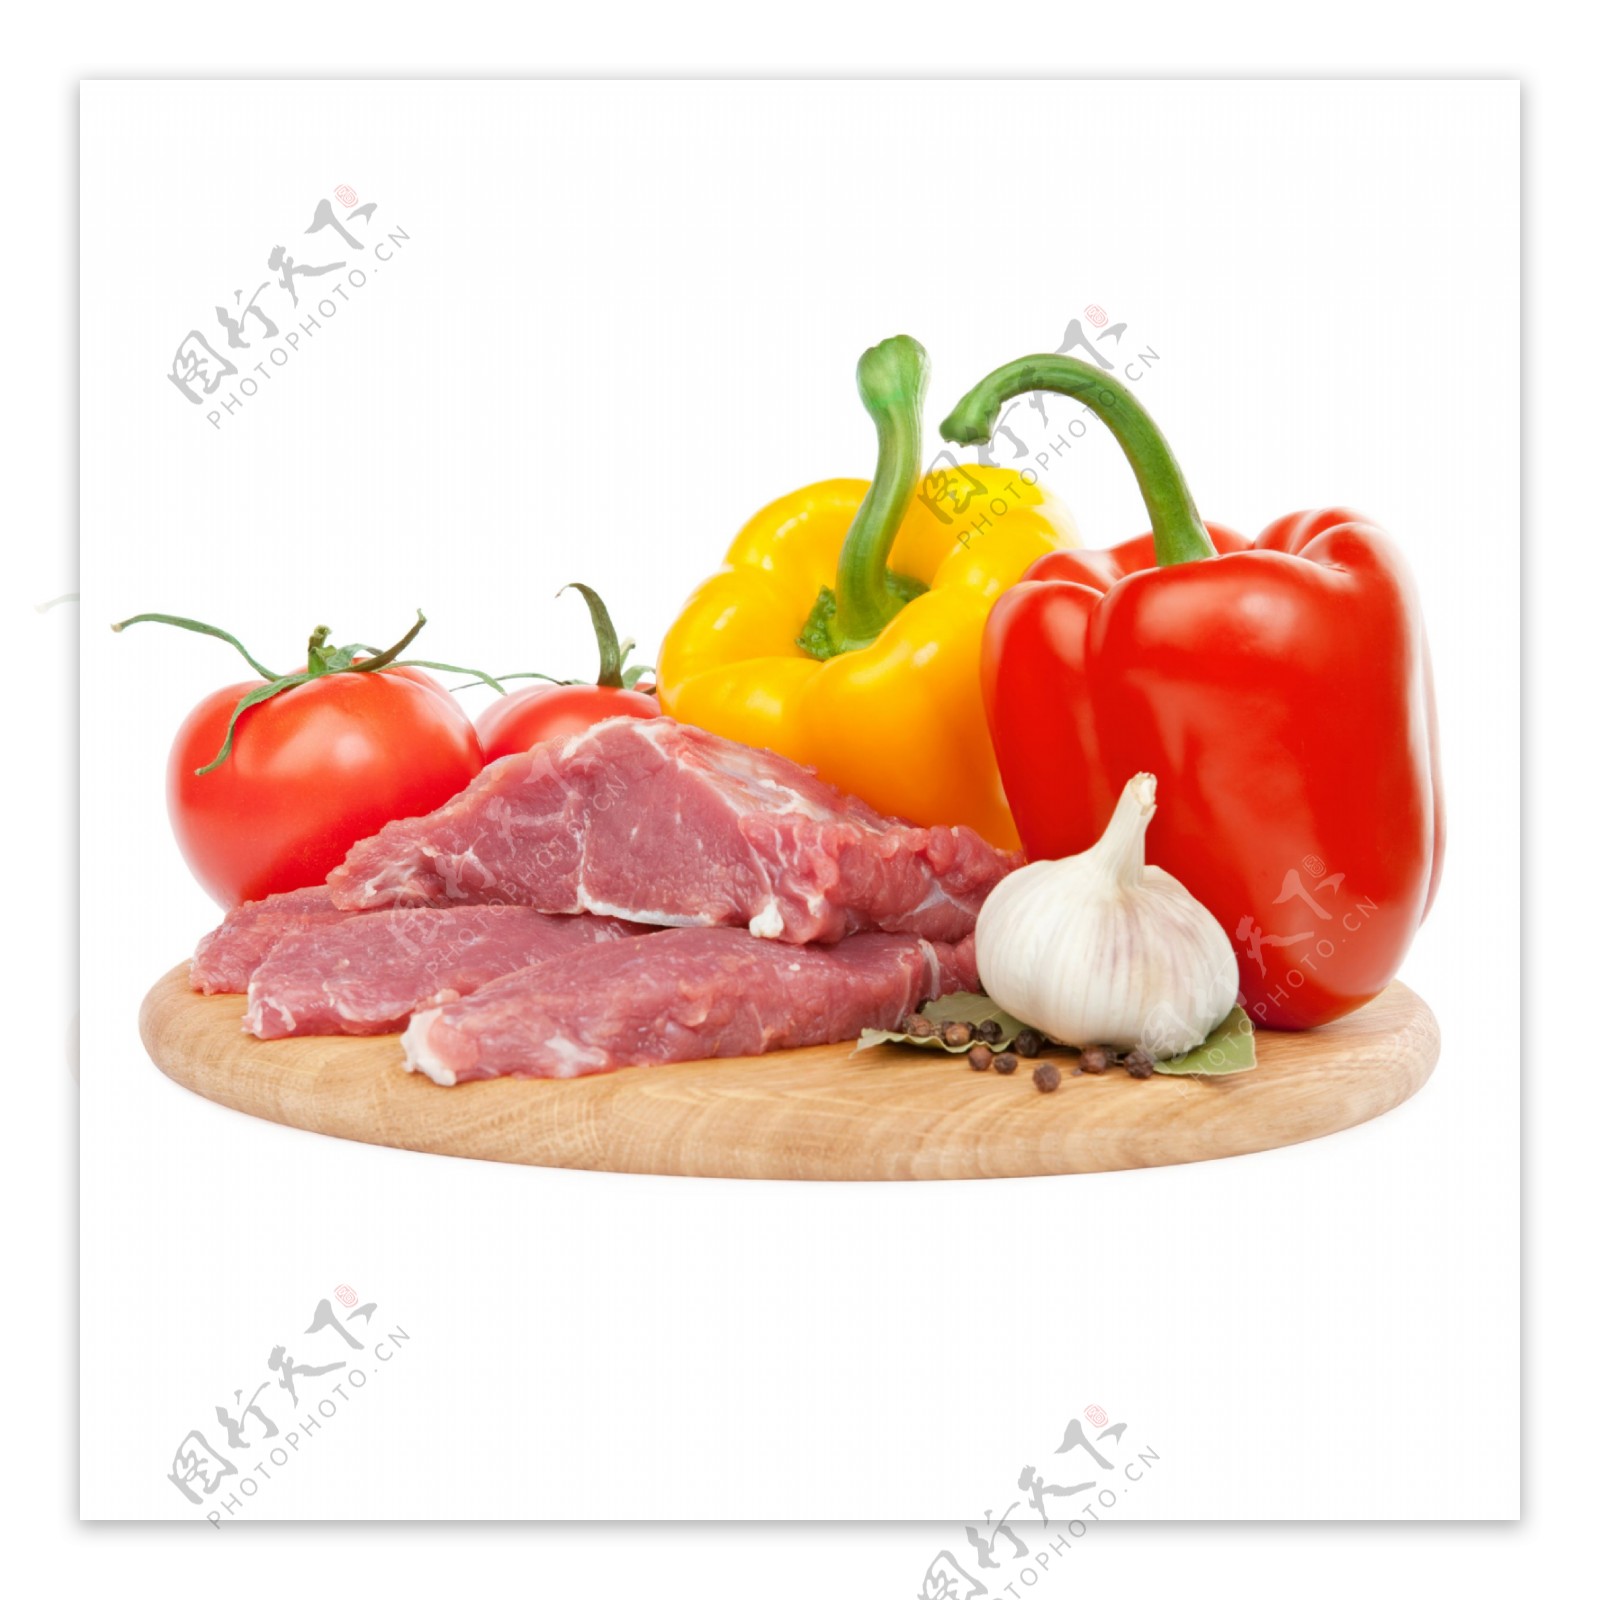 菜板上的肉食与辣椒图片